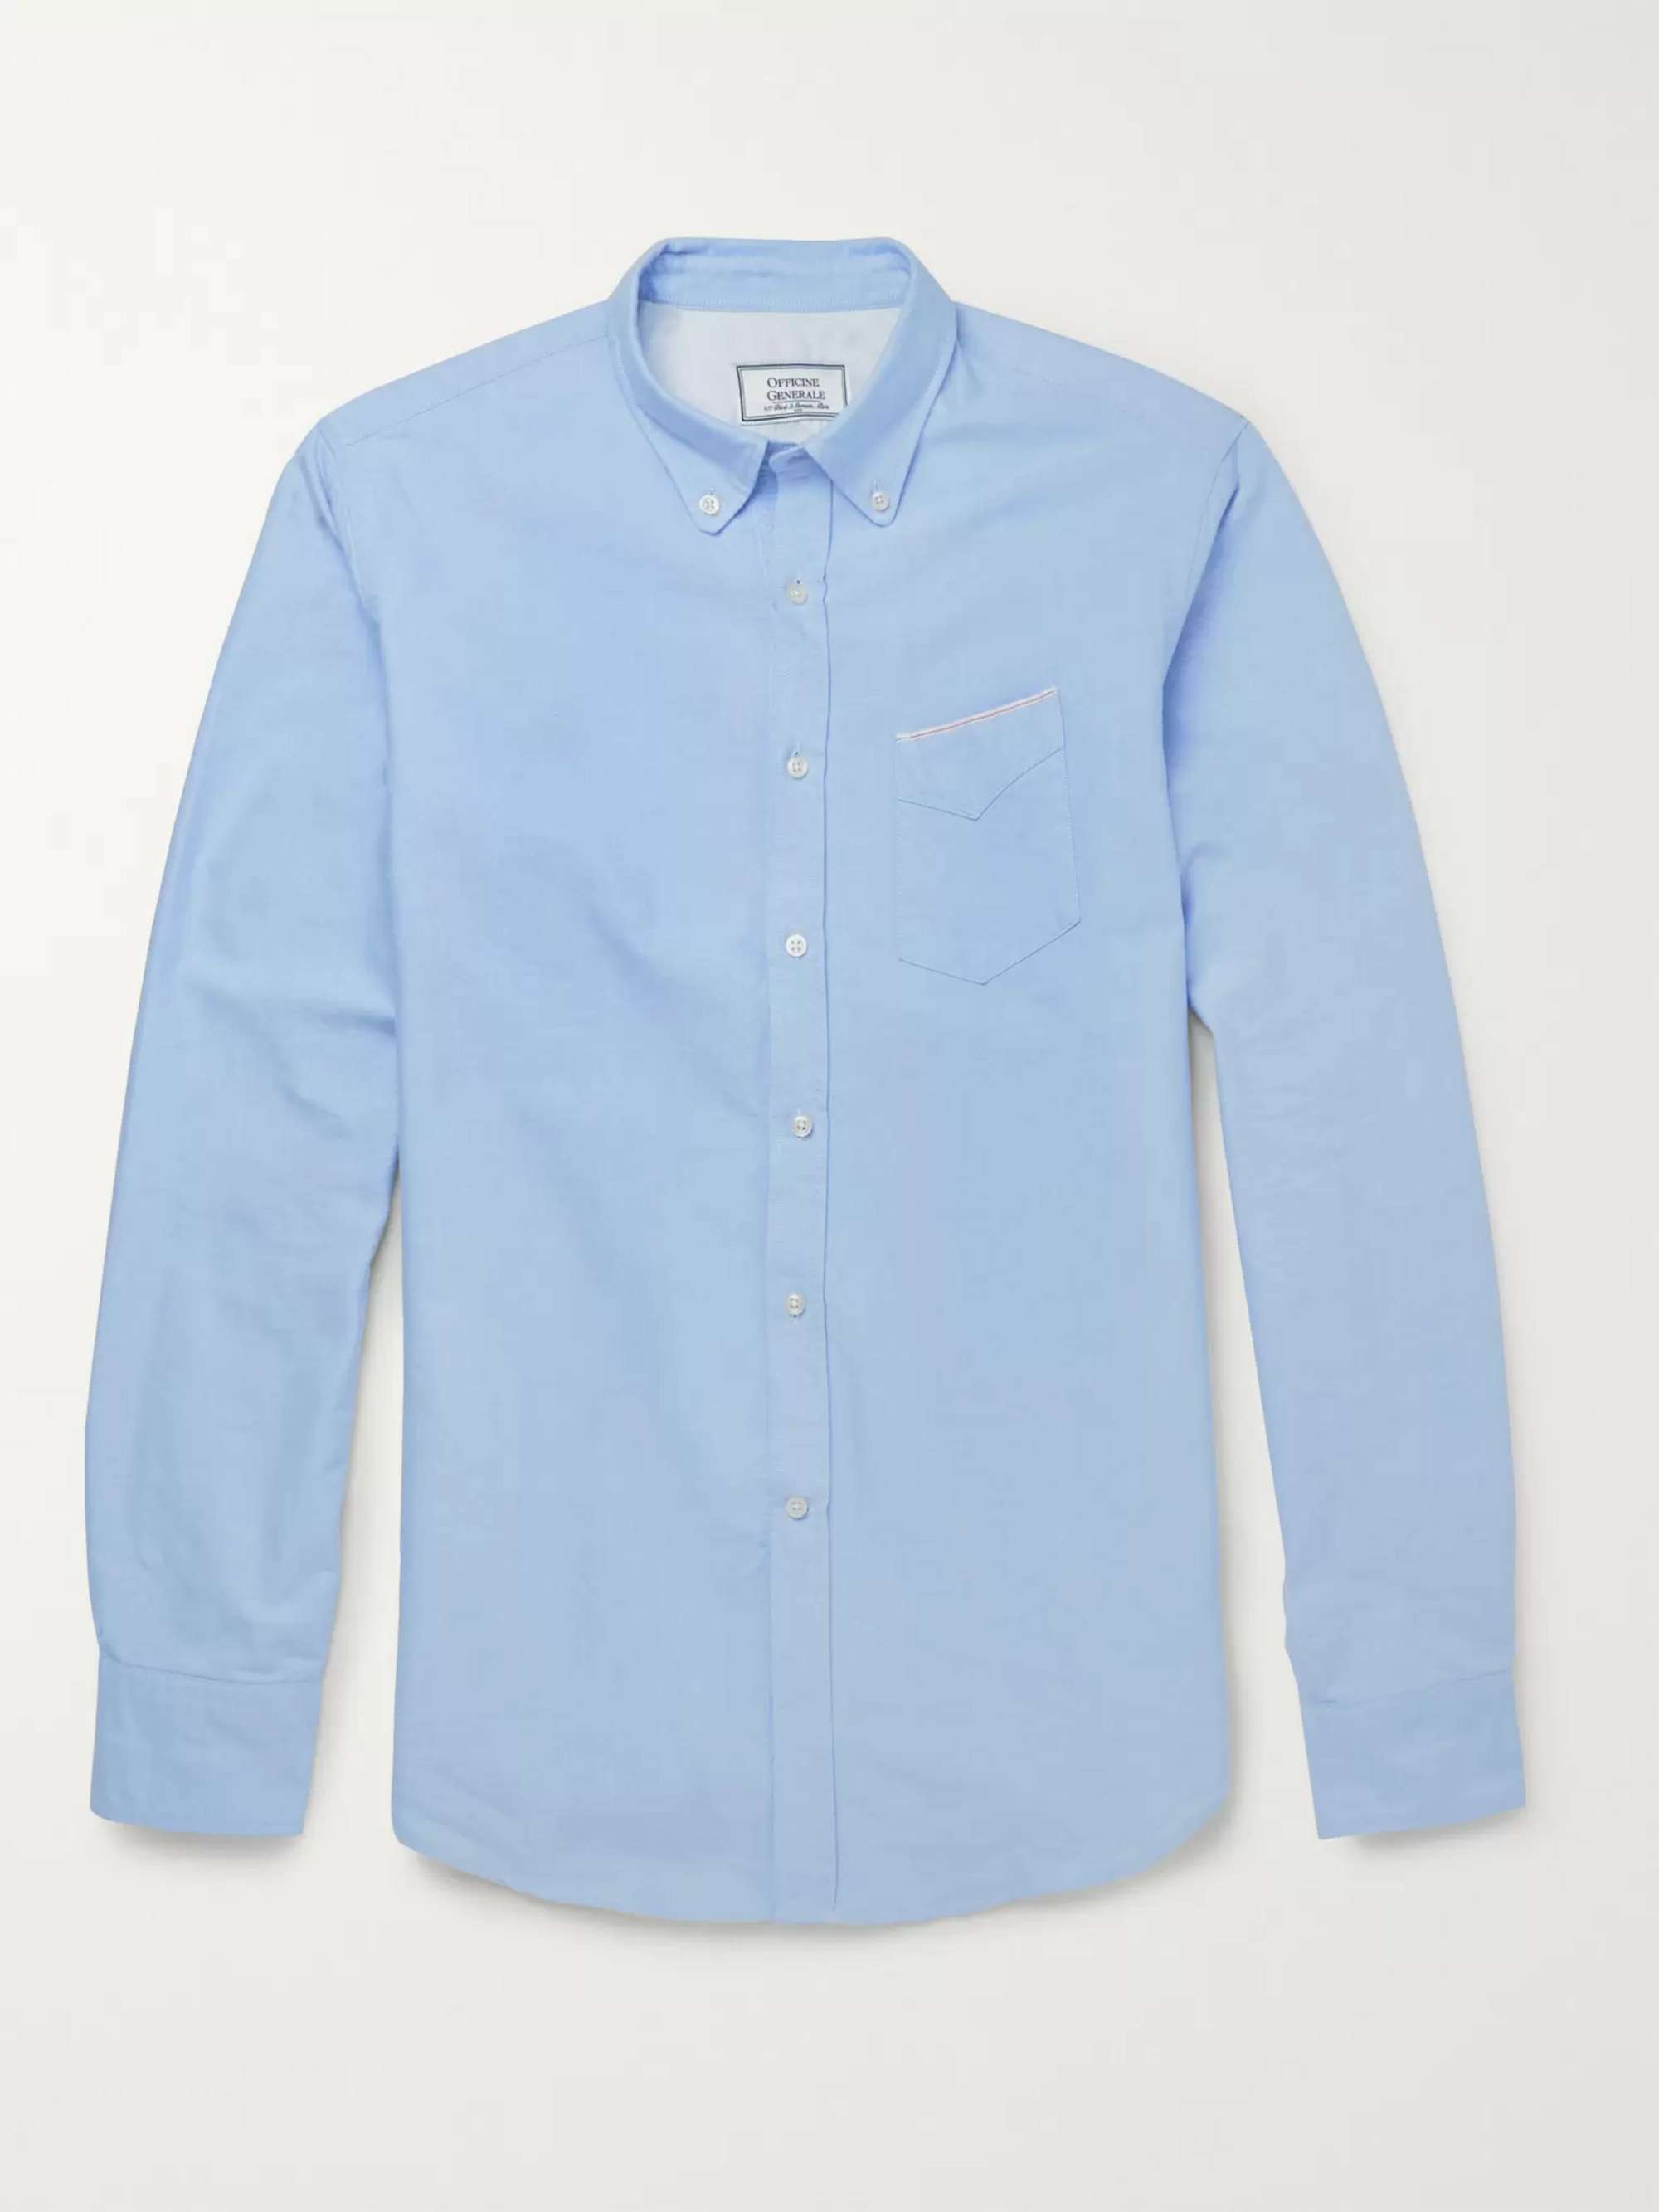 OFFICINE GÉNÉRALE Slim-Fit Cotton Oxford Shirt for Men | MR PORTER